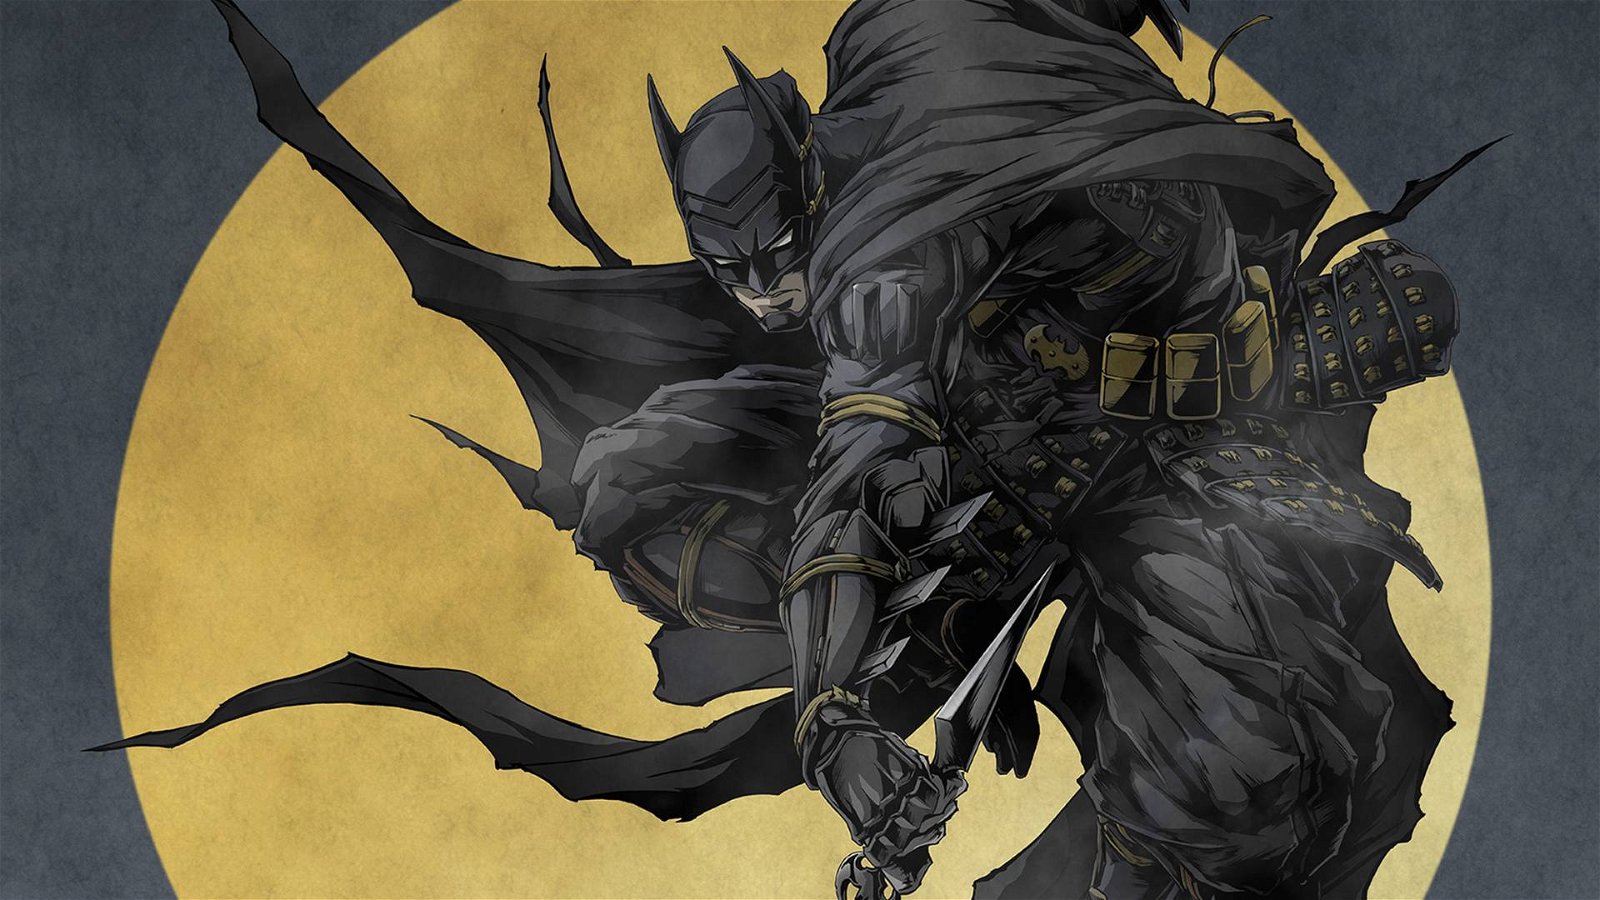 Immagine di Batman Ninja - The Show, il cavaliere oscuro arriva a teatro